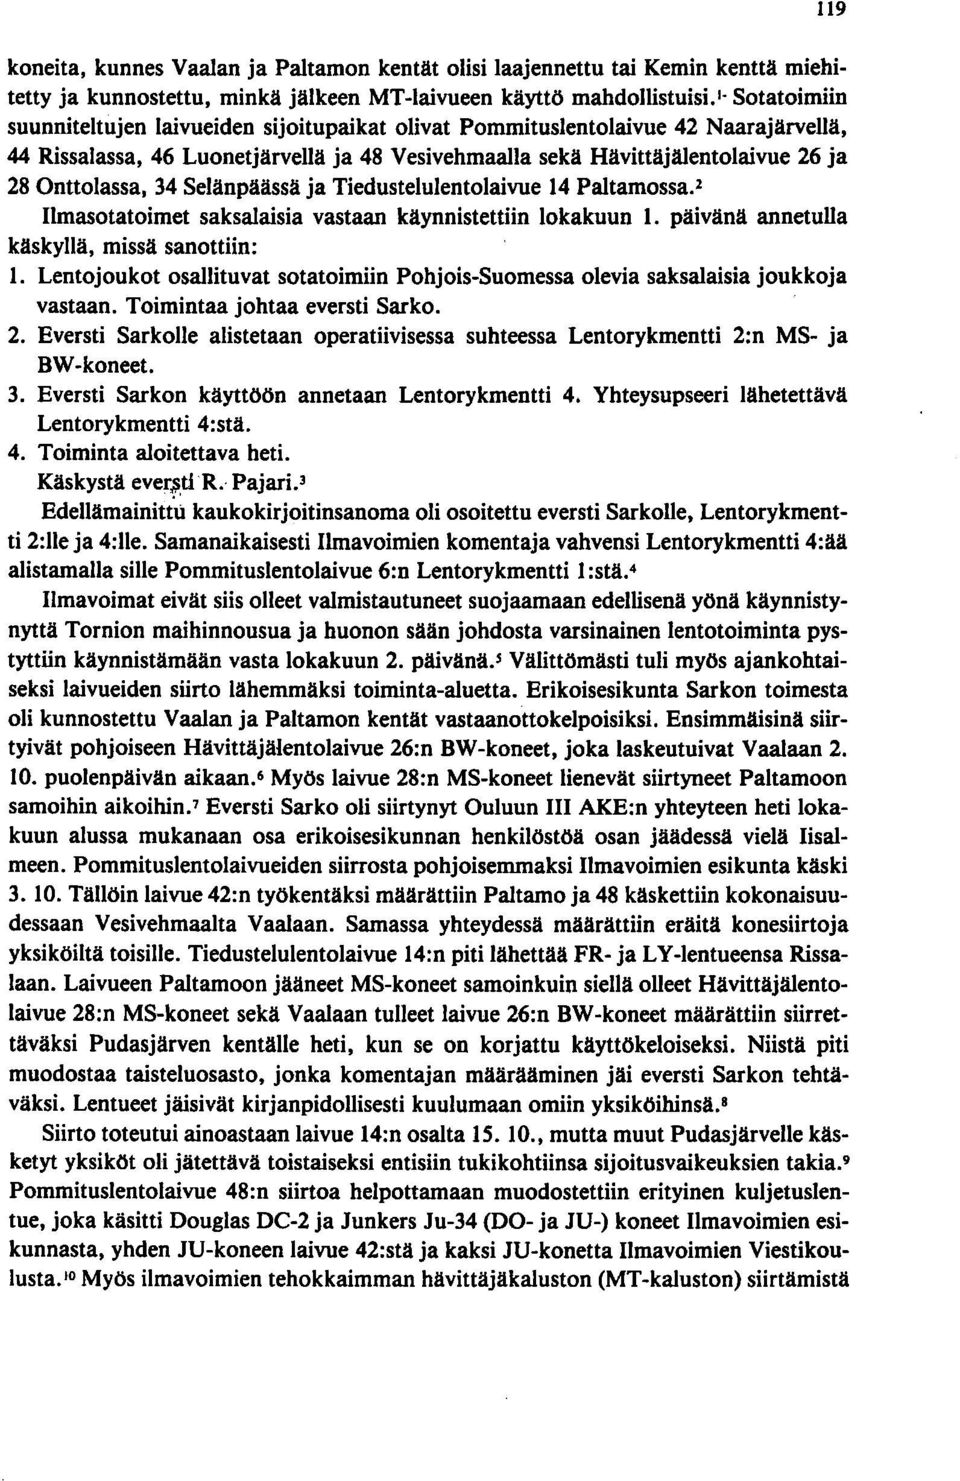 34 Selänpäässä ja Tiedustelulentolaivue 14 Paltamossa. 2 Ilmasotatoimet saksalaisia vastaan käynnistettiin lokakuun 1. päivänä annetulla käskyllä, missä sanottiin: 1.